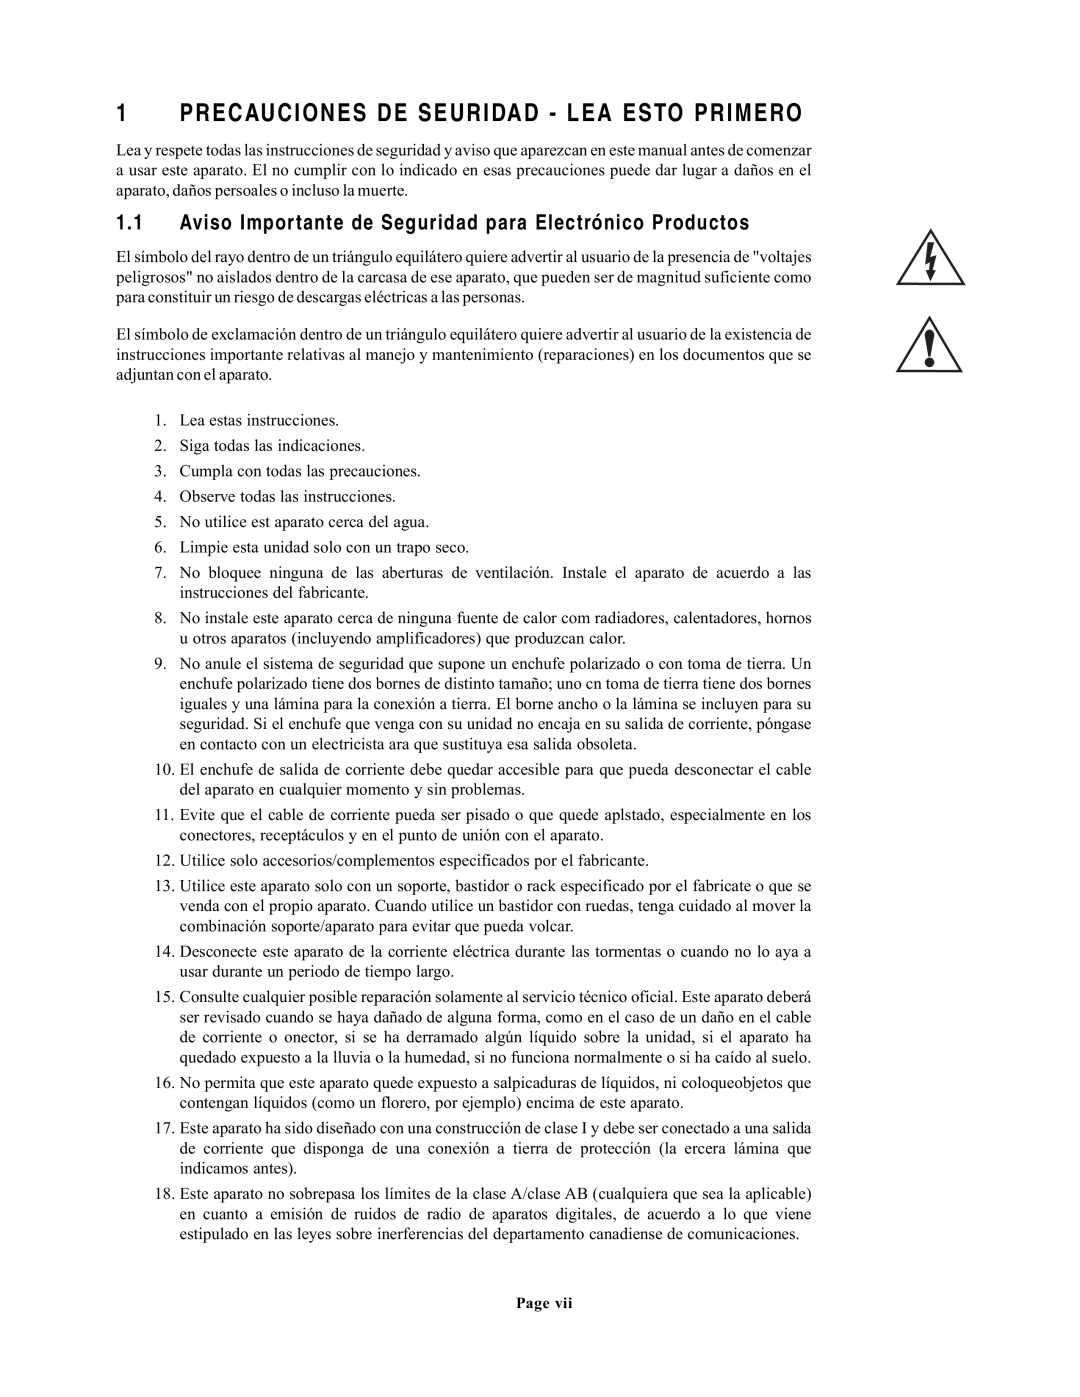 EAW UX8800 owner manual Precauciones De Seuridad - Lea Esto Primero 